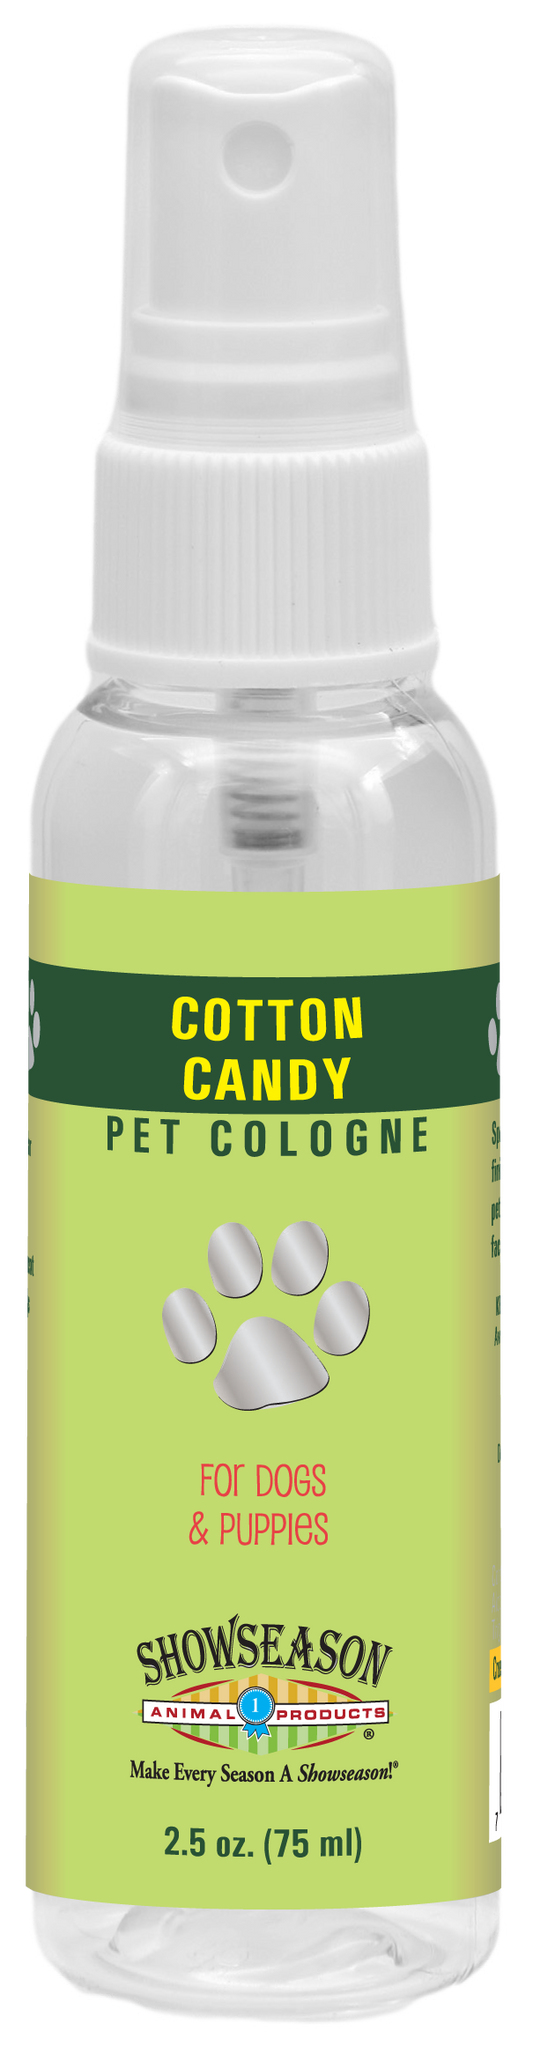 Cotton Candy Pet Cologne | Showseason®